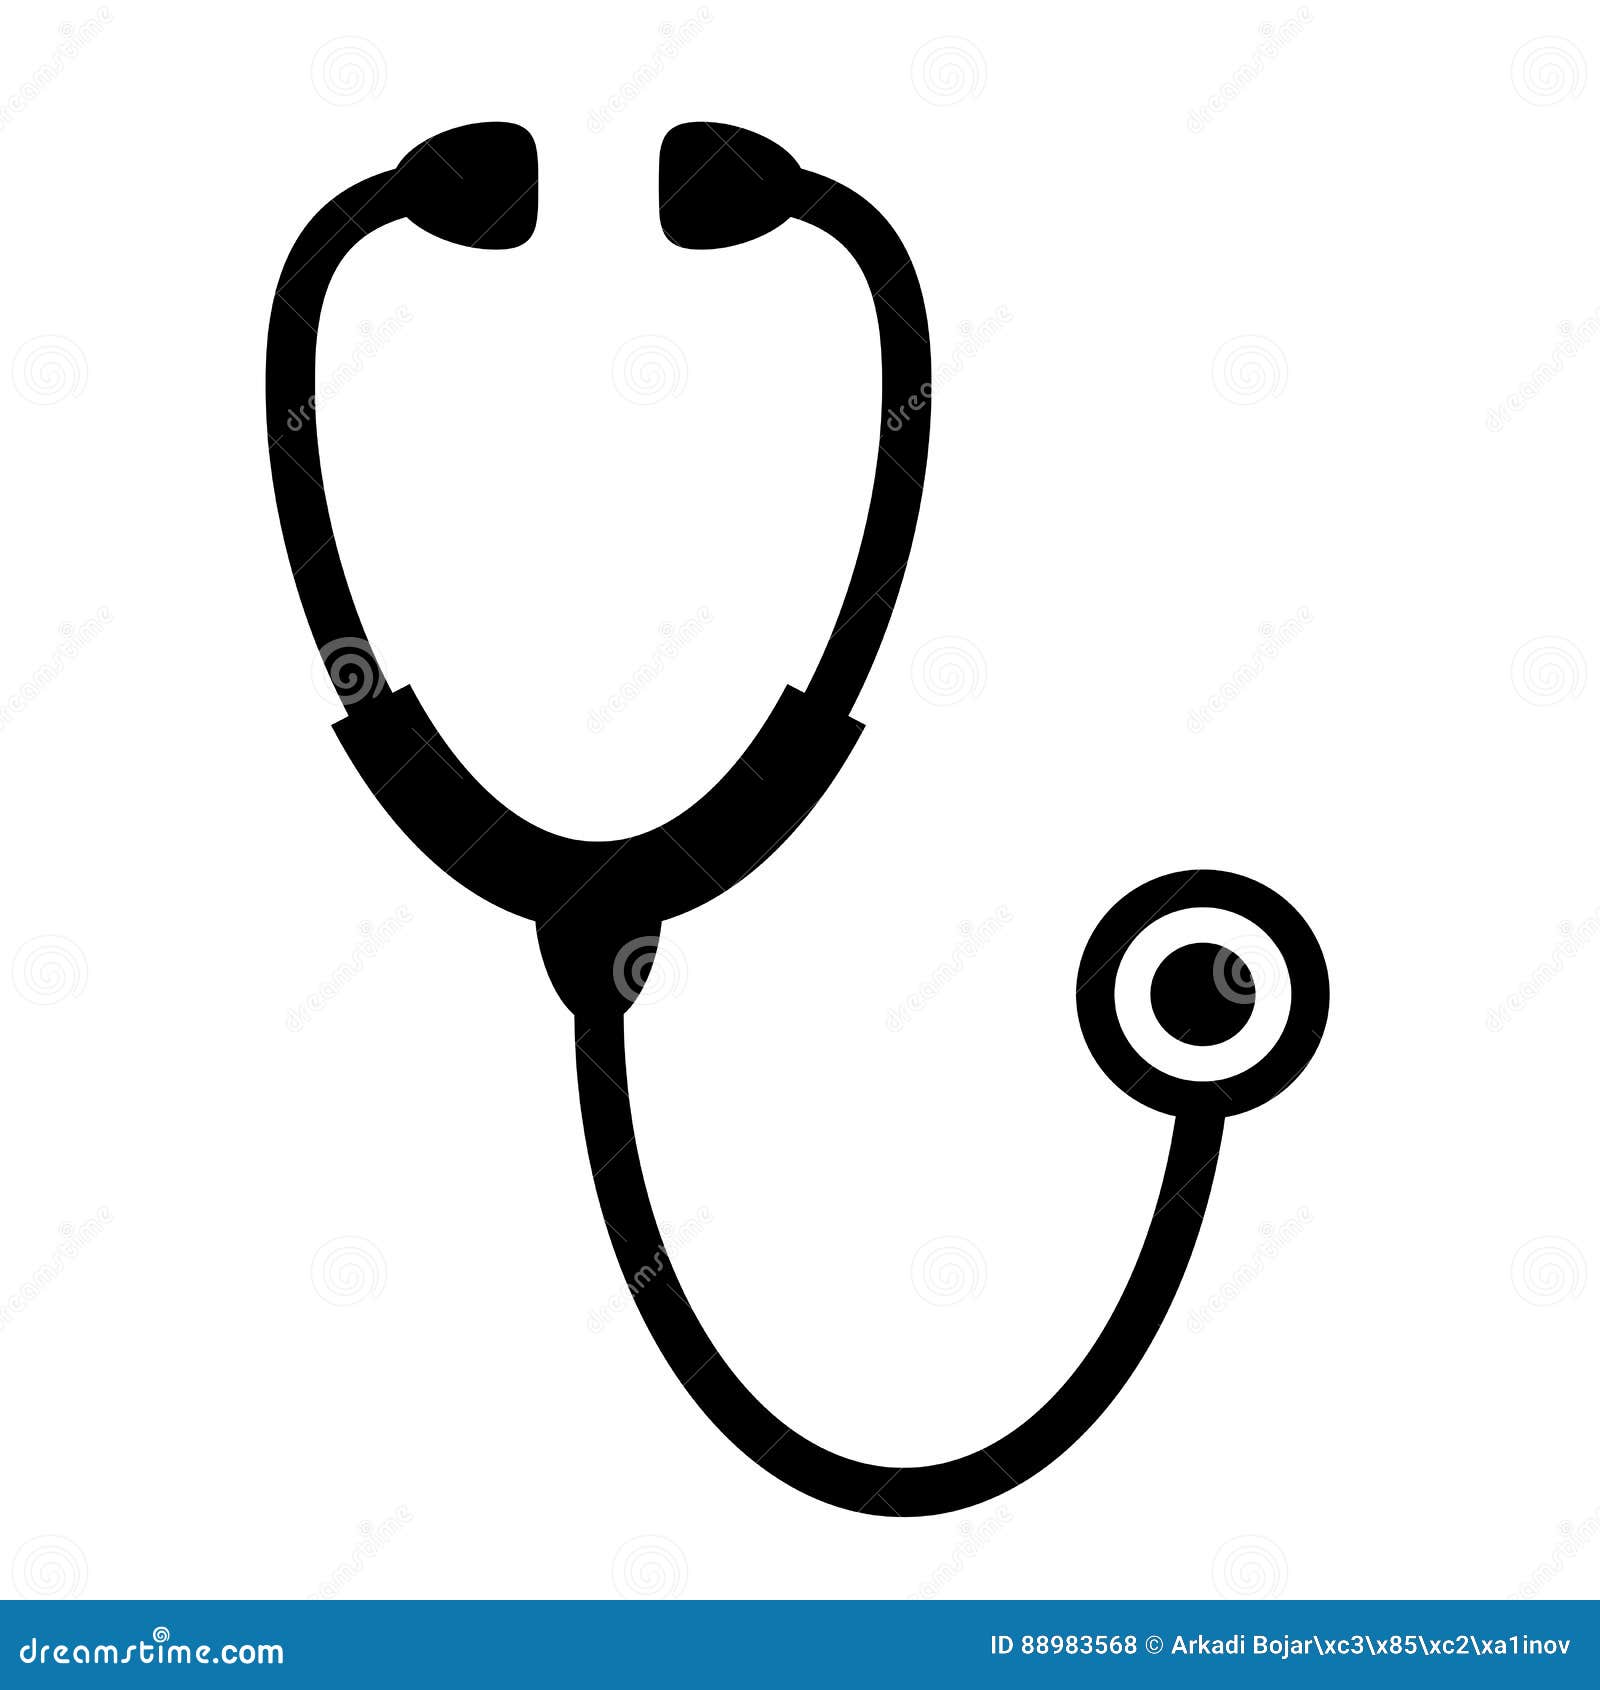 stethoscope medical icon